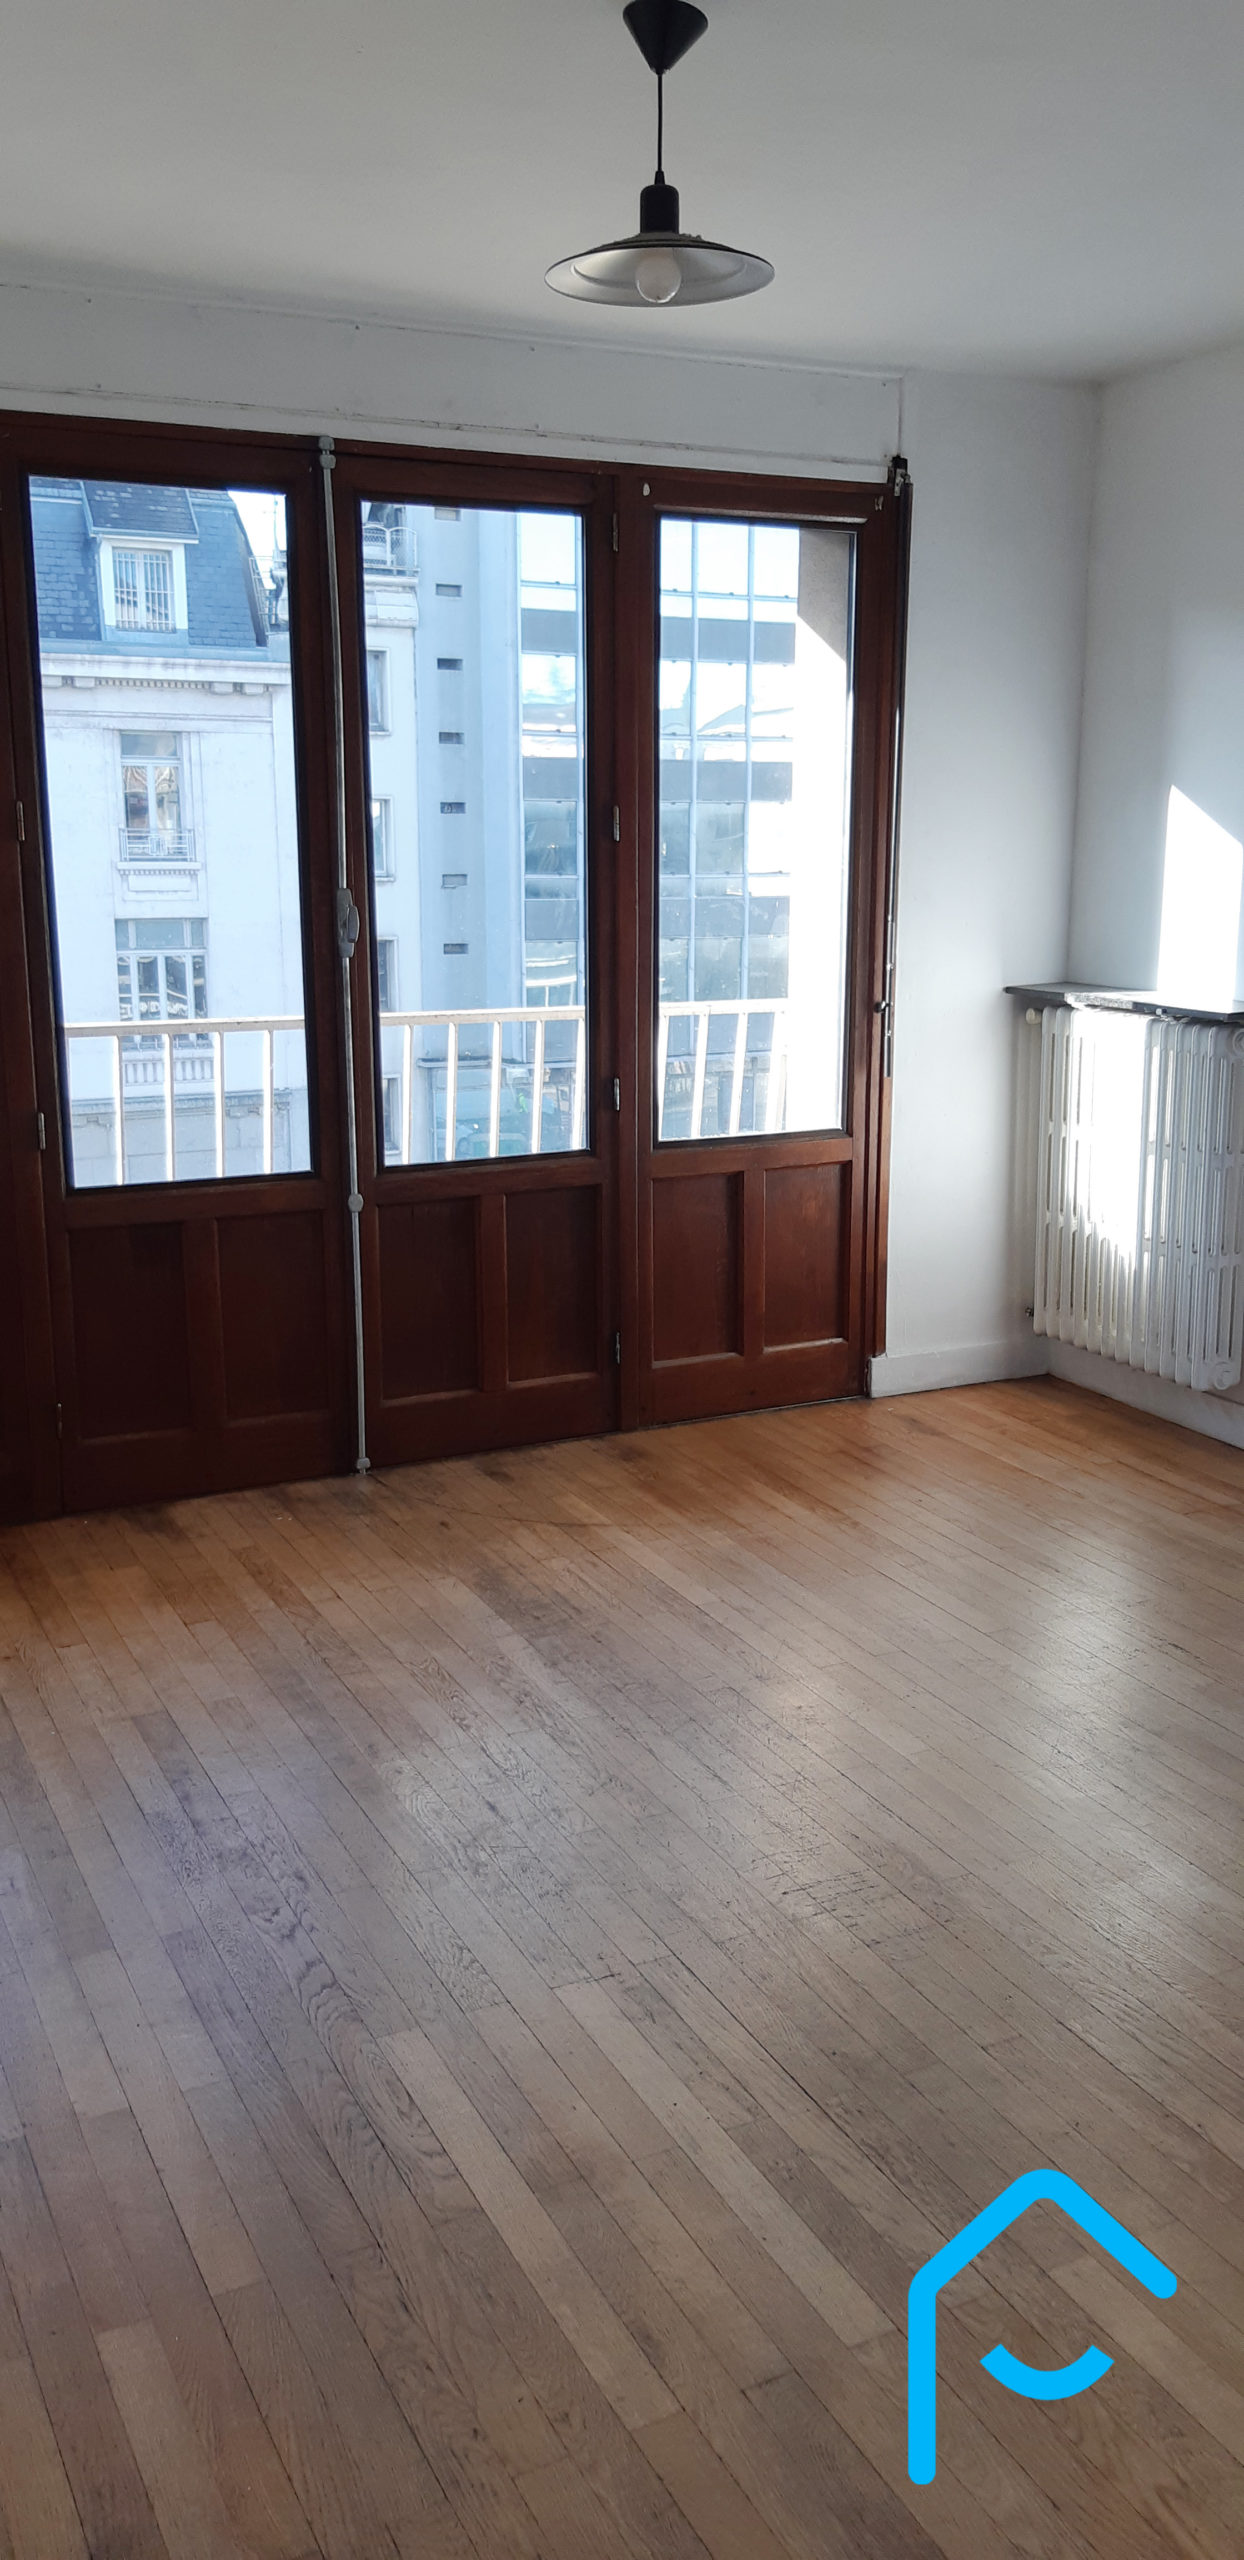 A vendre appartement Chambéry Savoie T3 avec cave lumineux vue 6